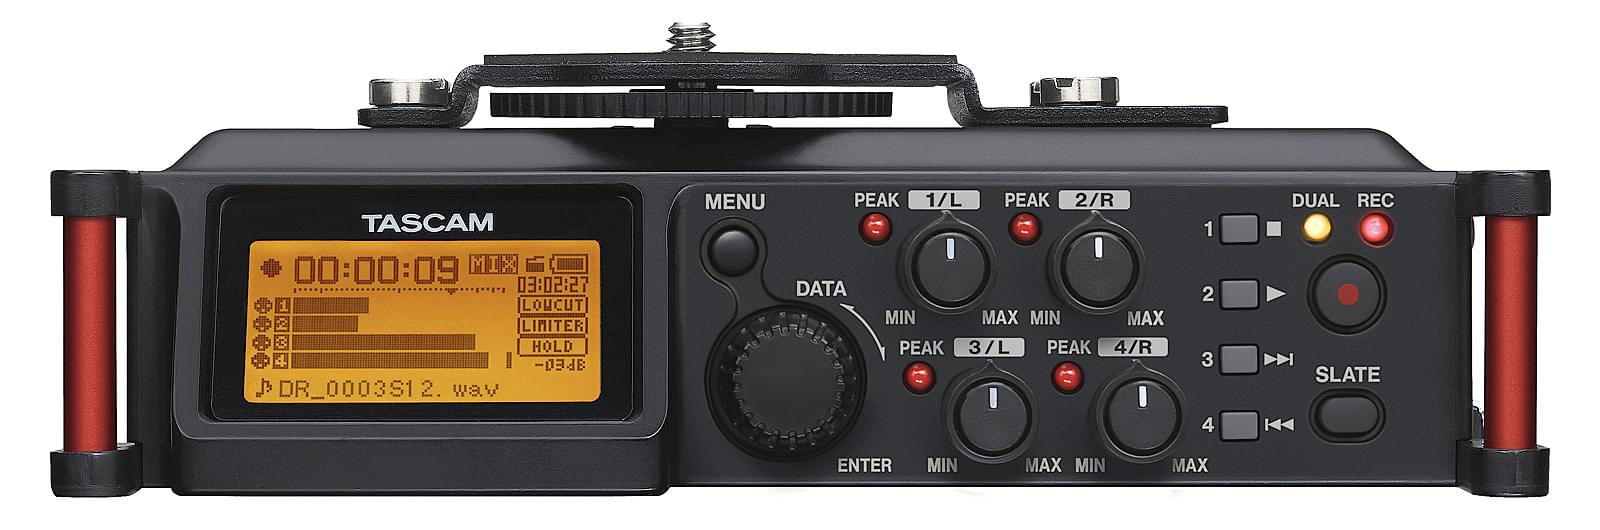 Enregistreur audio stéréo pour appareils reflex numériques (DSLR) | Tascam DR-70D